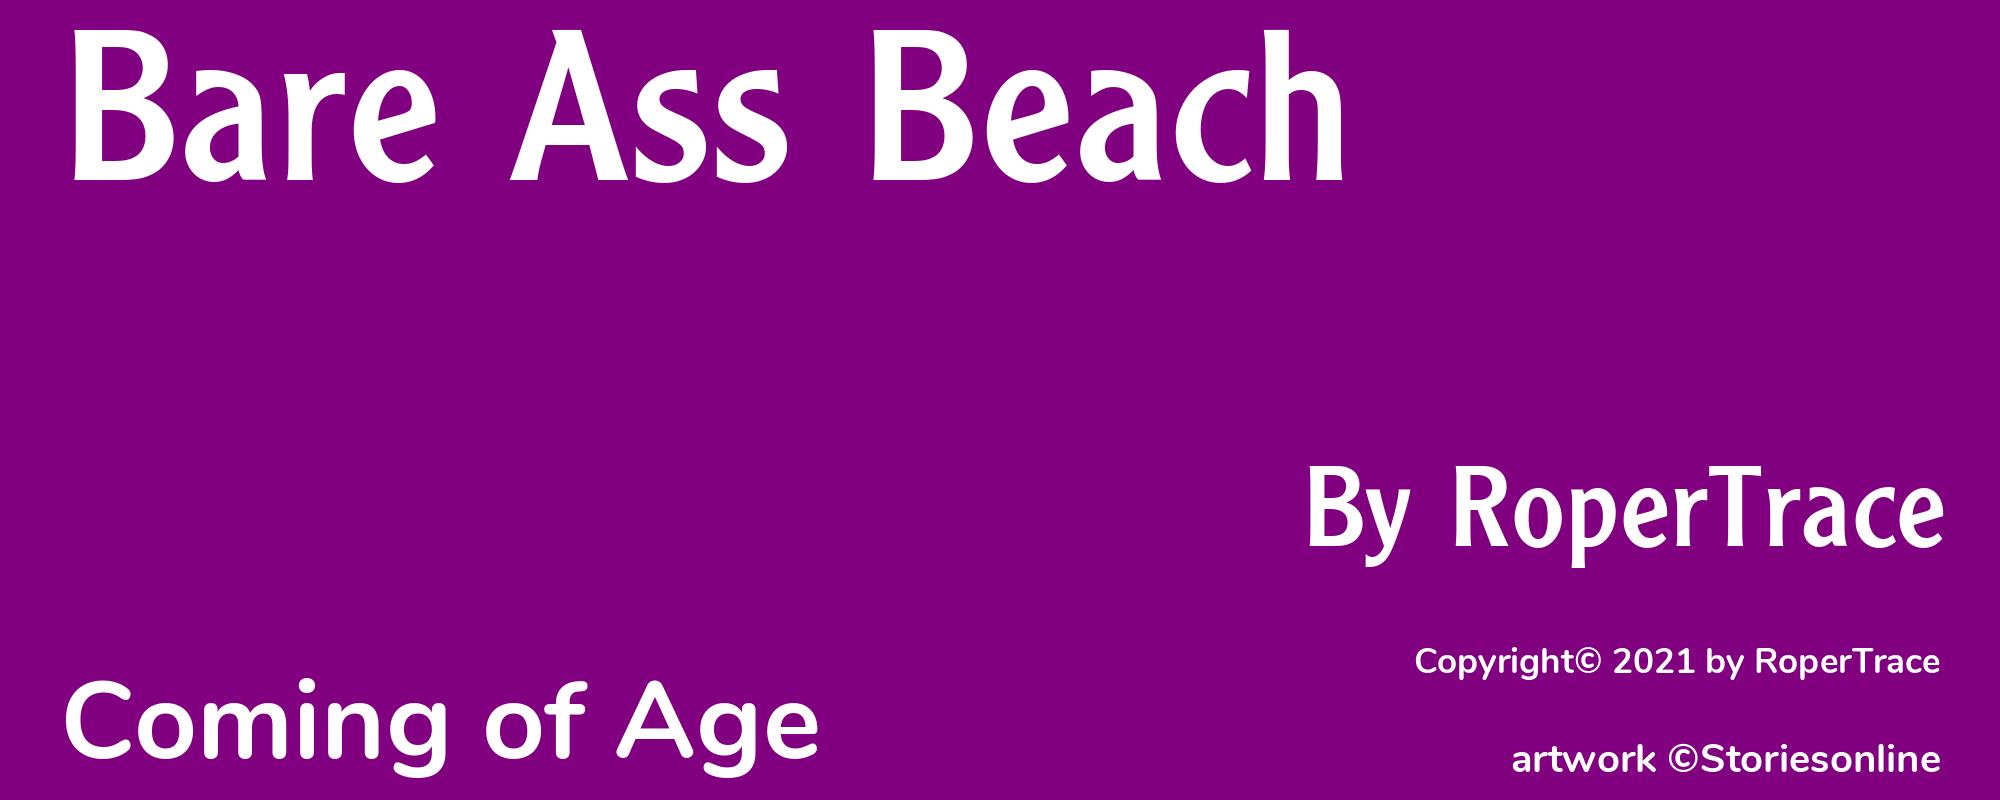 Bare Ass Beach - Cover